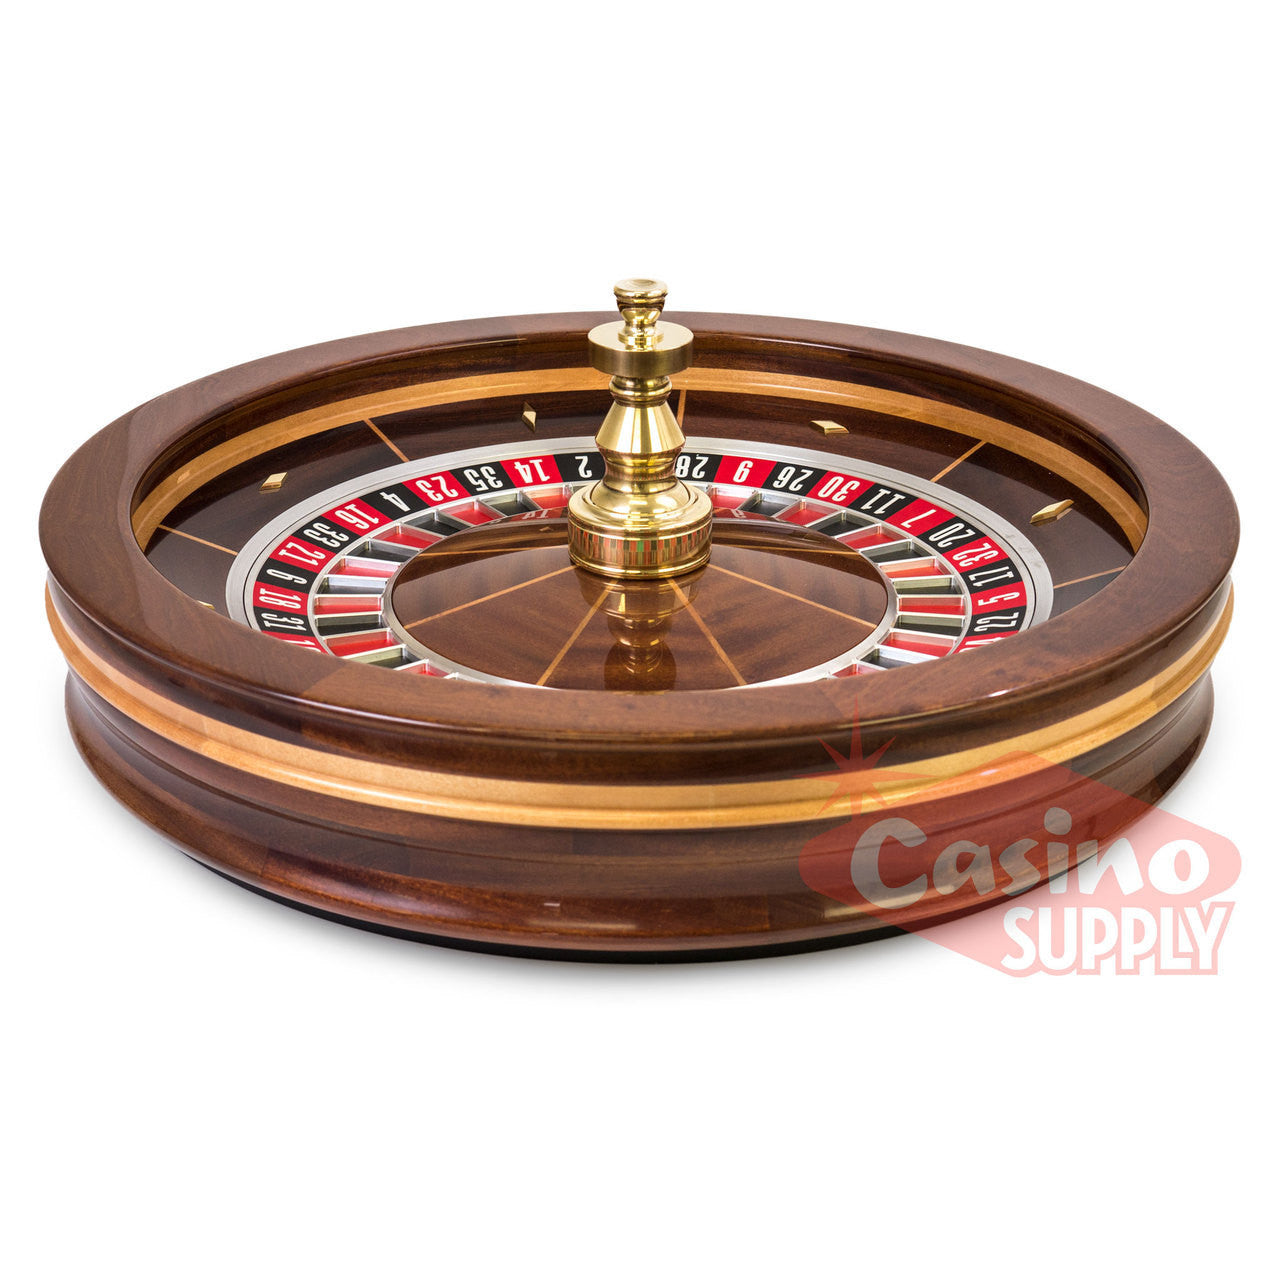 Roulette Wheel 30 Inch Professional Grade - Casino Supply - 1